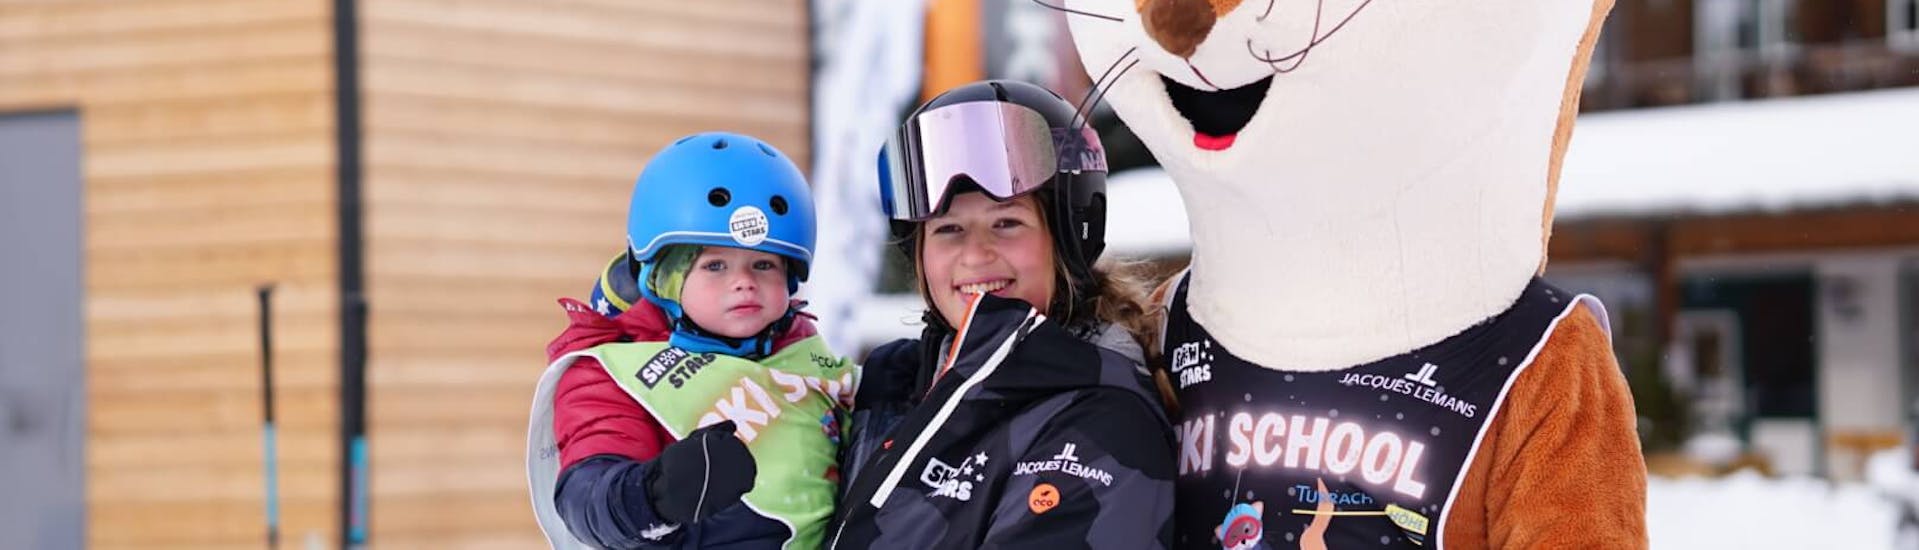 Clases de esquí para niños a partir de 2 años para debutantes.